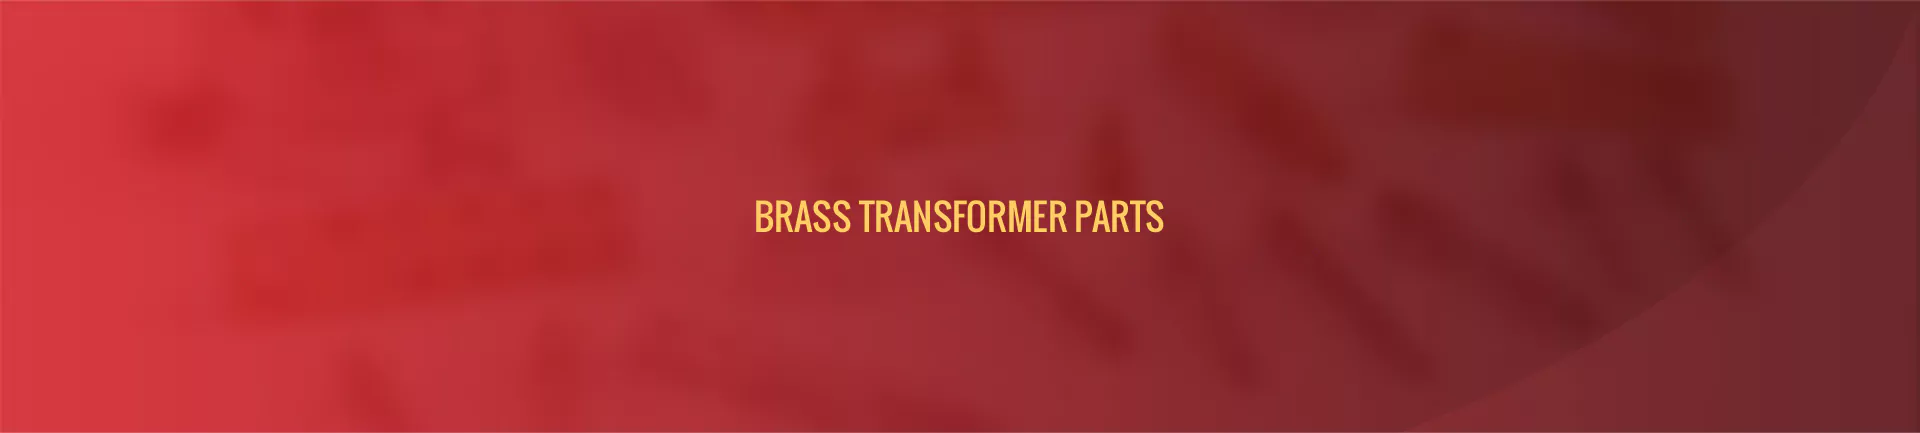 brass-transformer-parts-banner